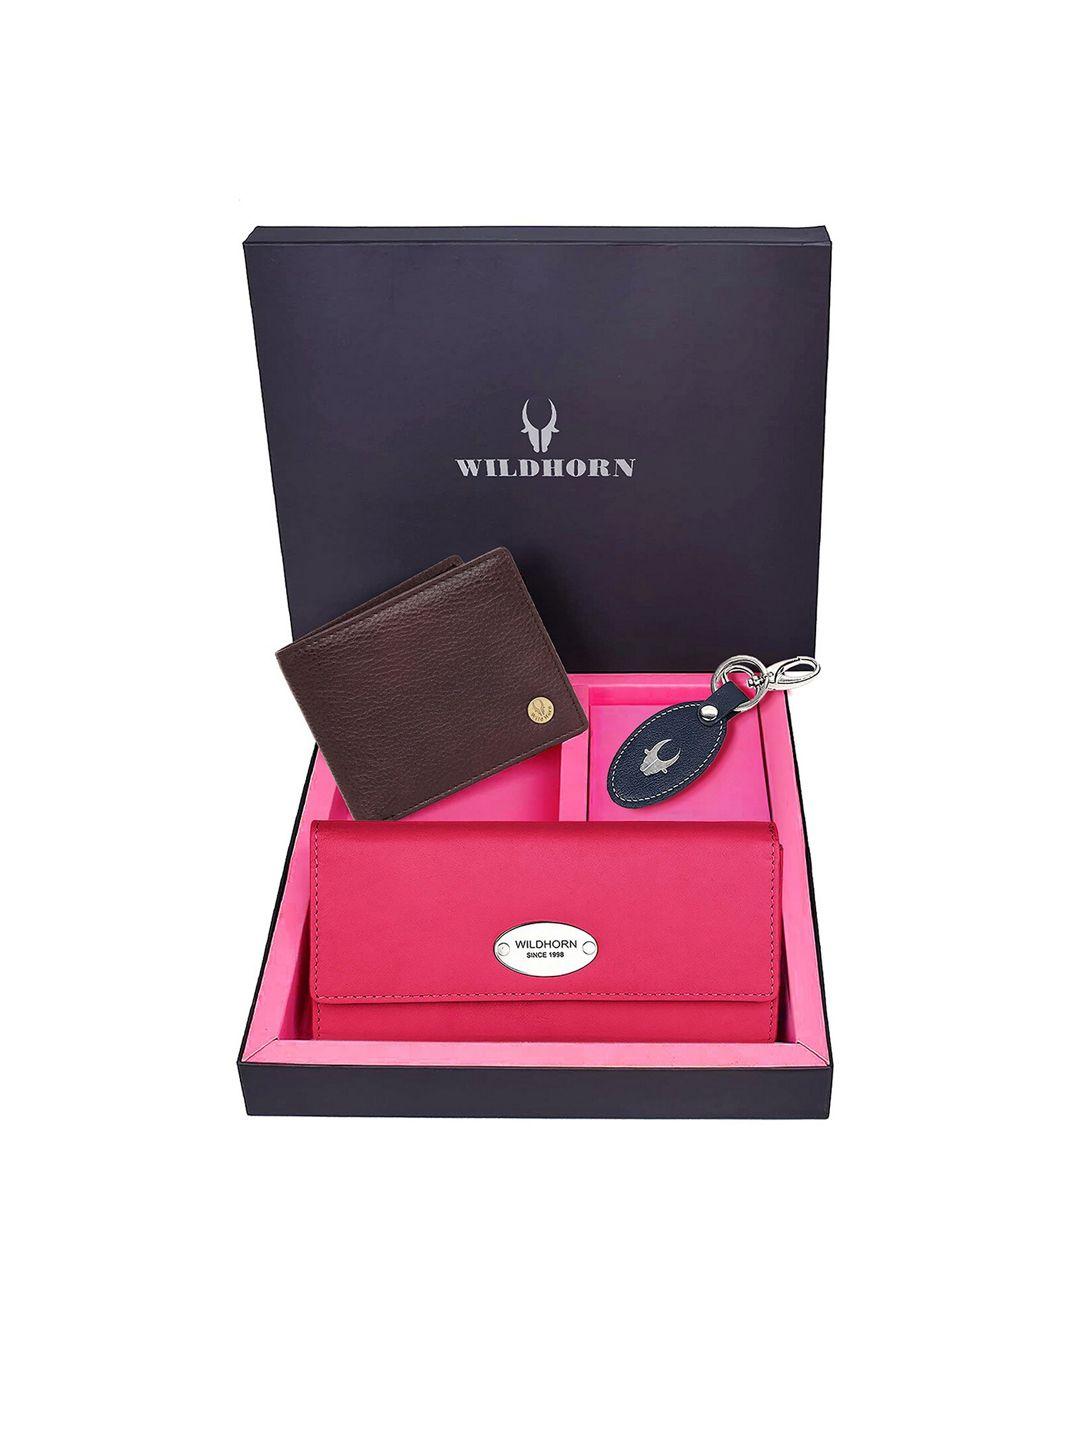 wildhorn unisex pink & brown textured accessory gift set